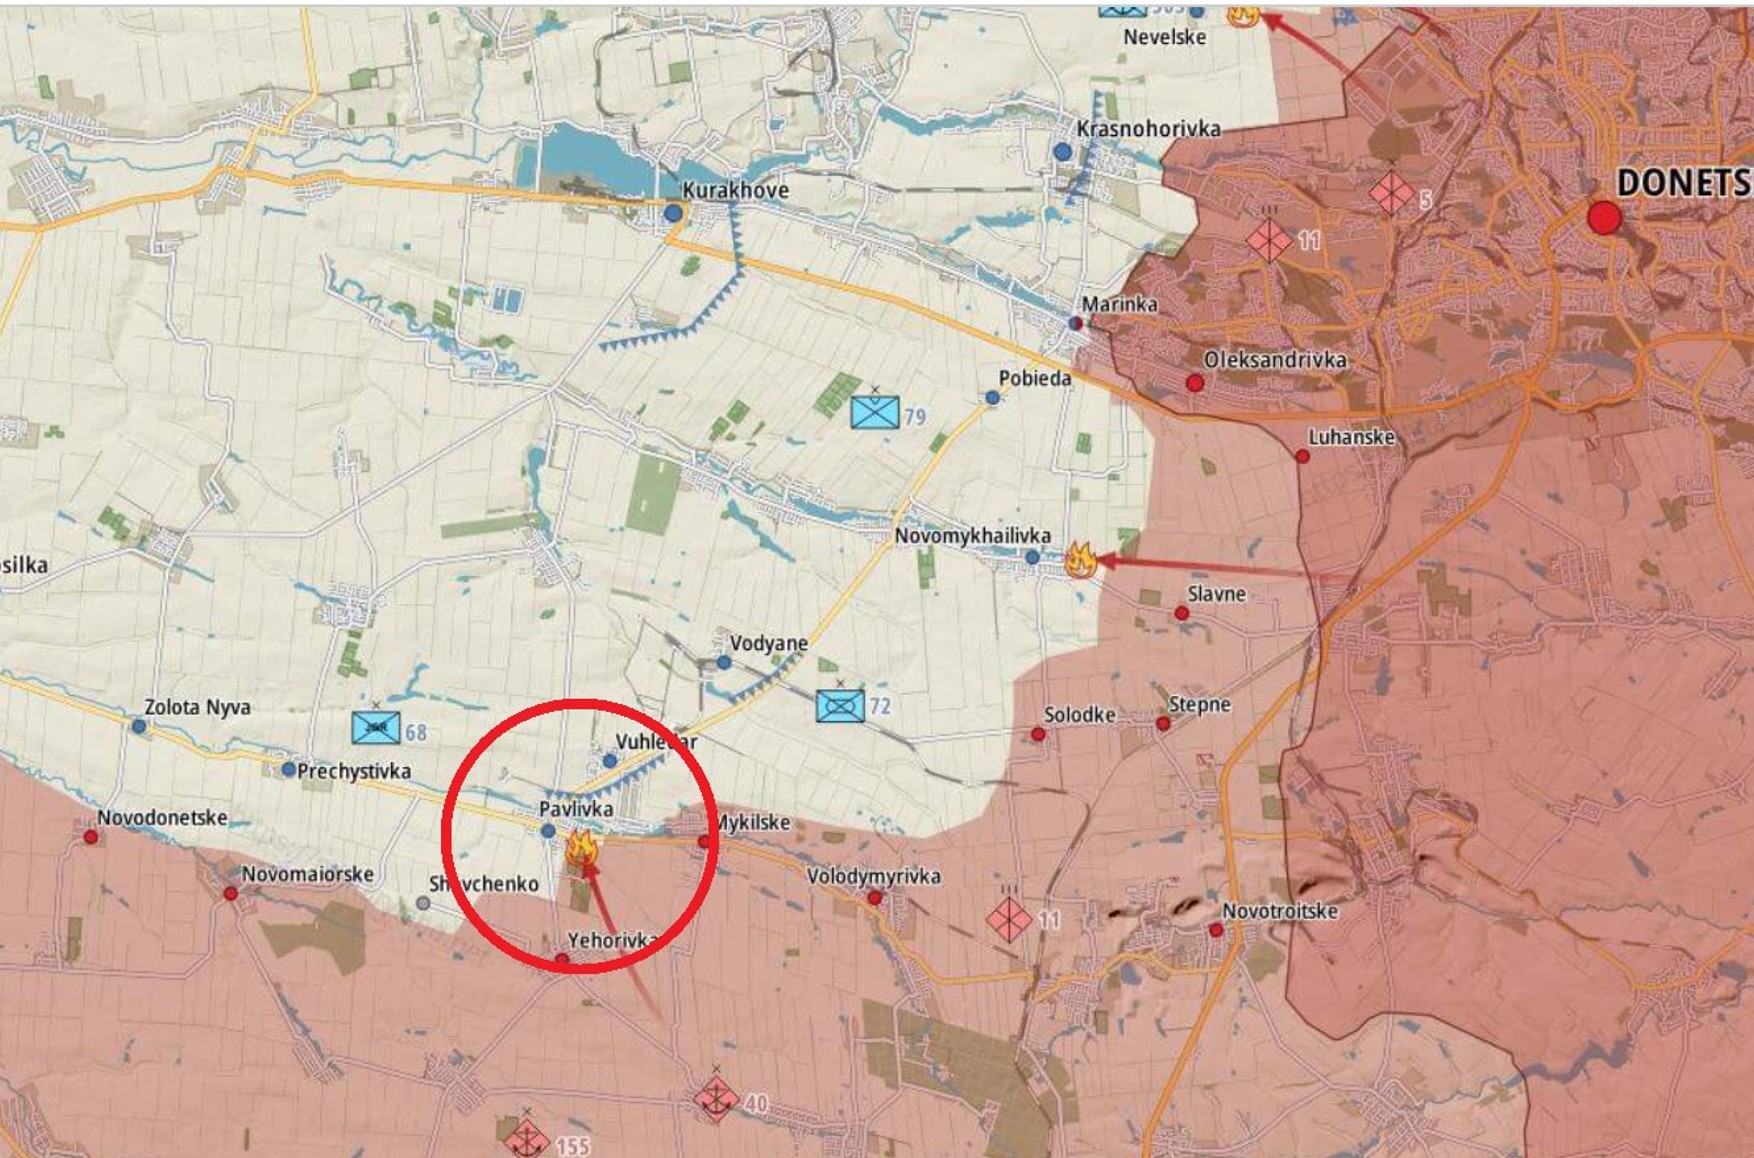 Сотни убитых российских морпехов под Угледаром и новые ЗРК Украины. Что происходит на линии фронта